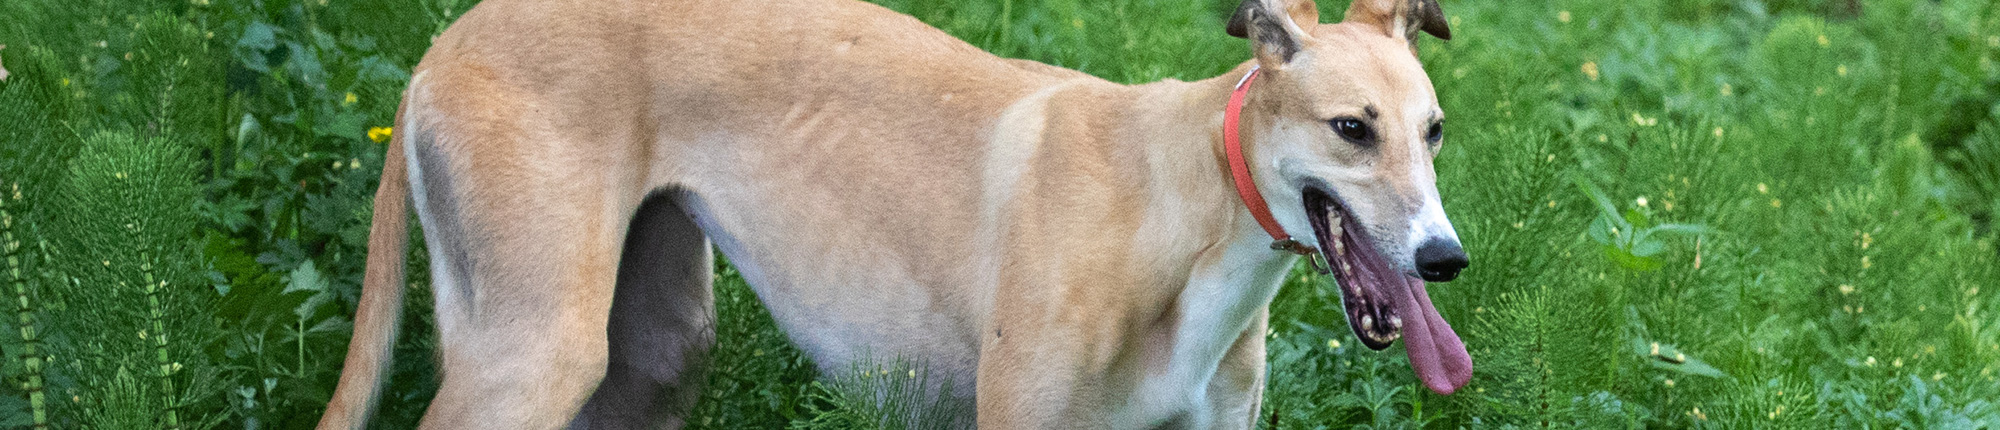 greyhound pets news